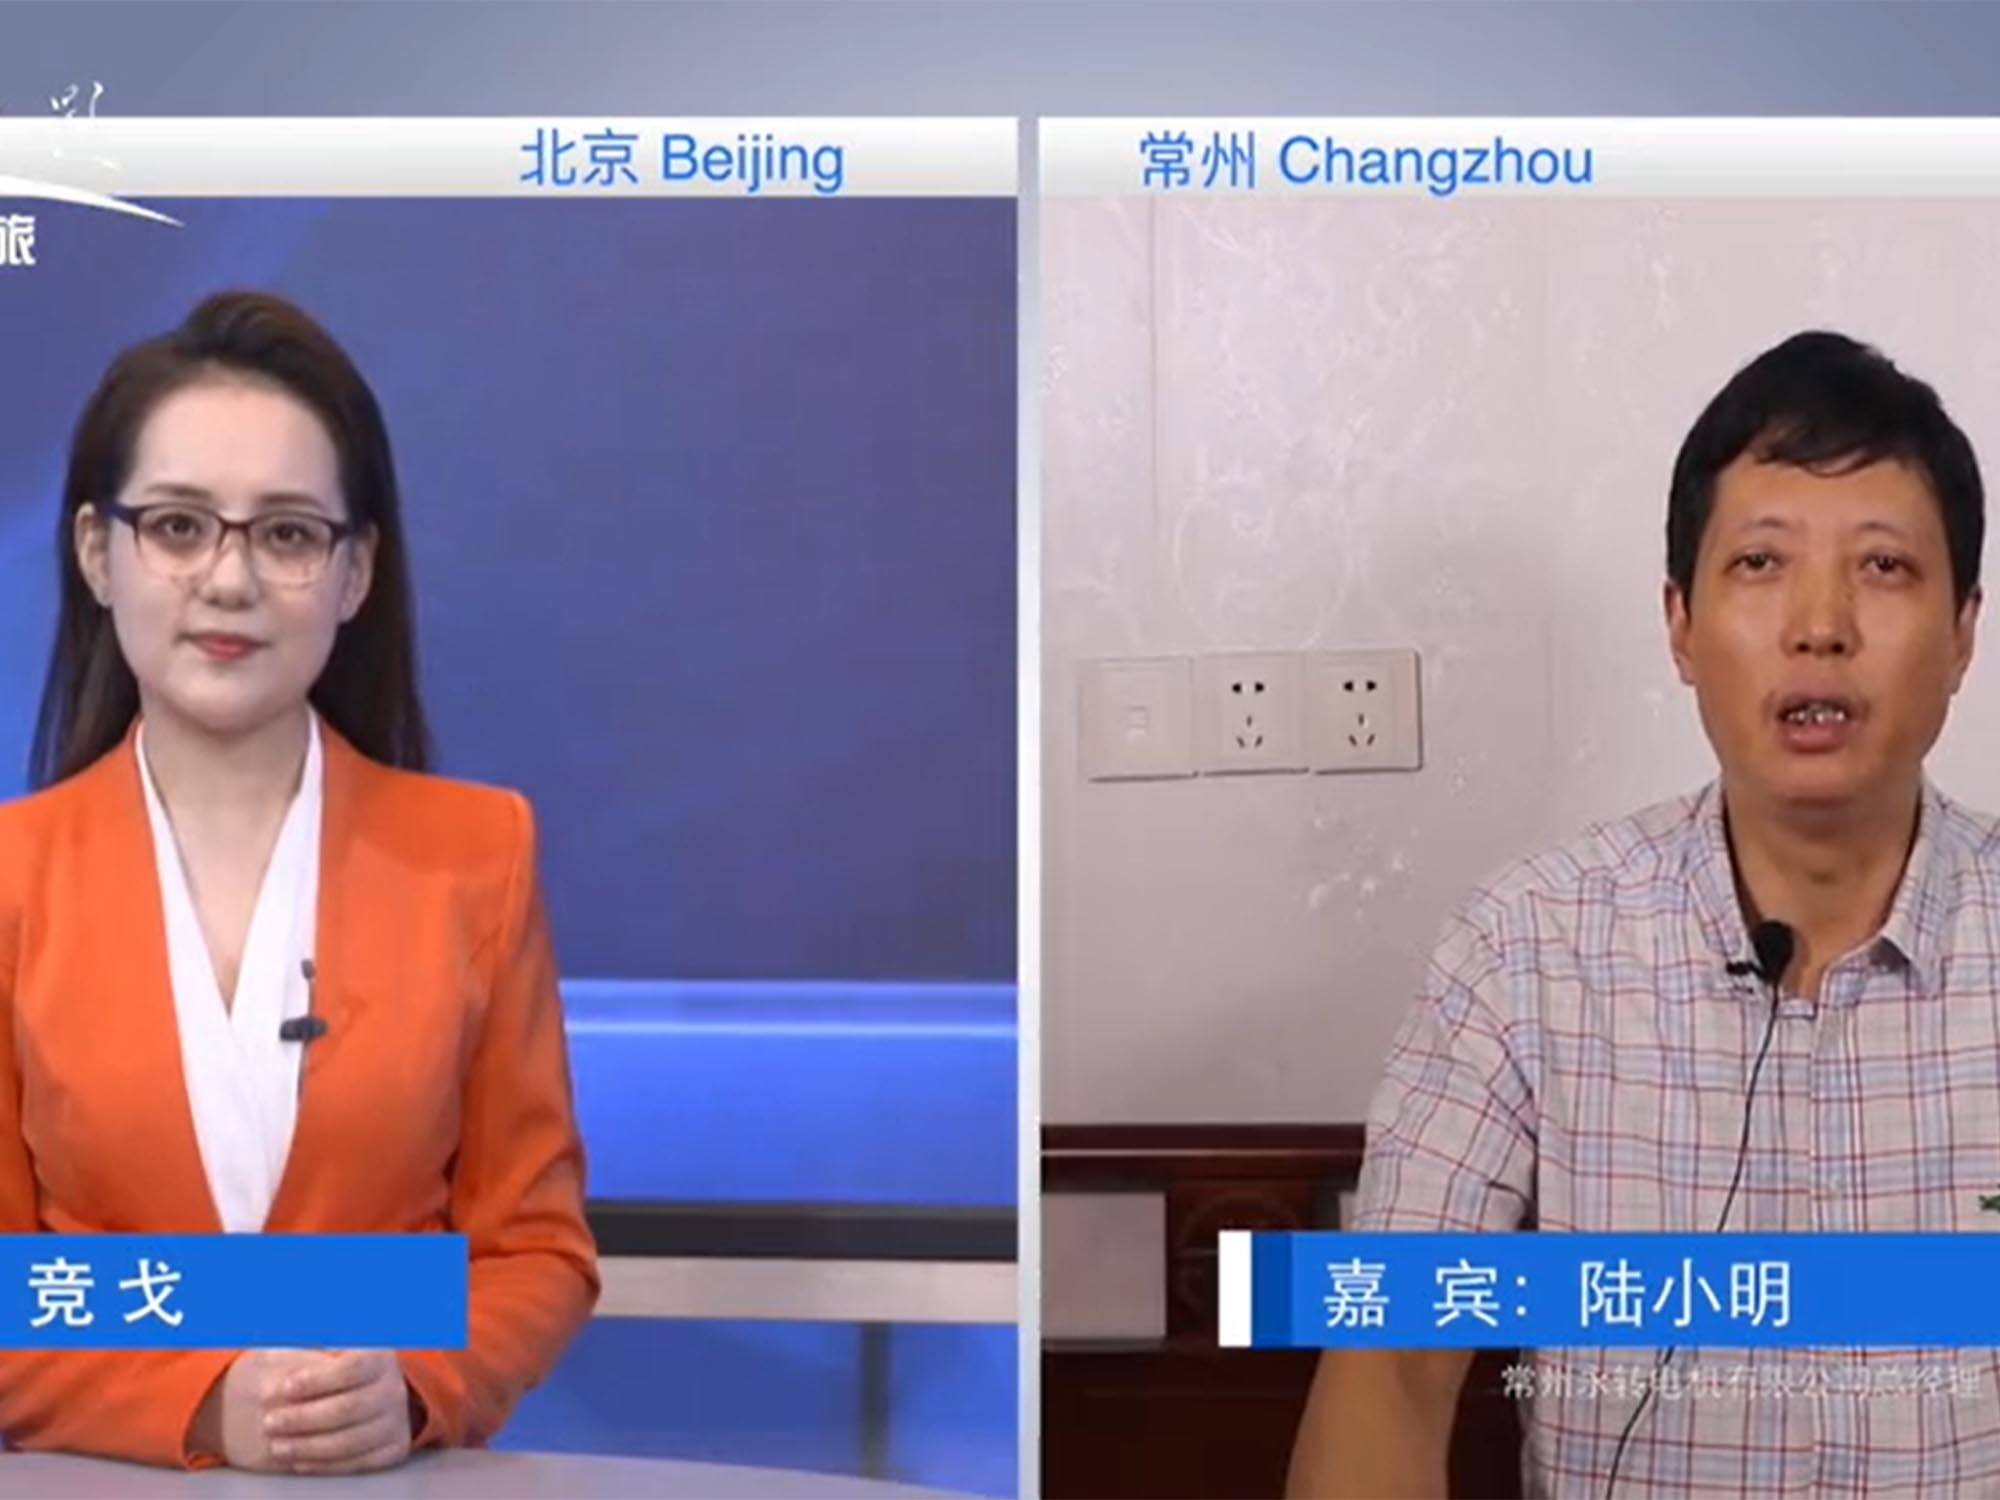 Генеральный директор г-н Лу Сяомин принял интервью в колонке CCTV Discovery Journey.